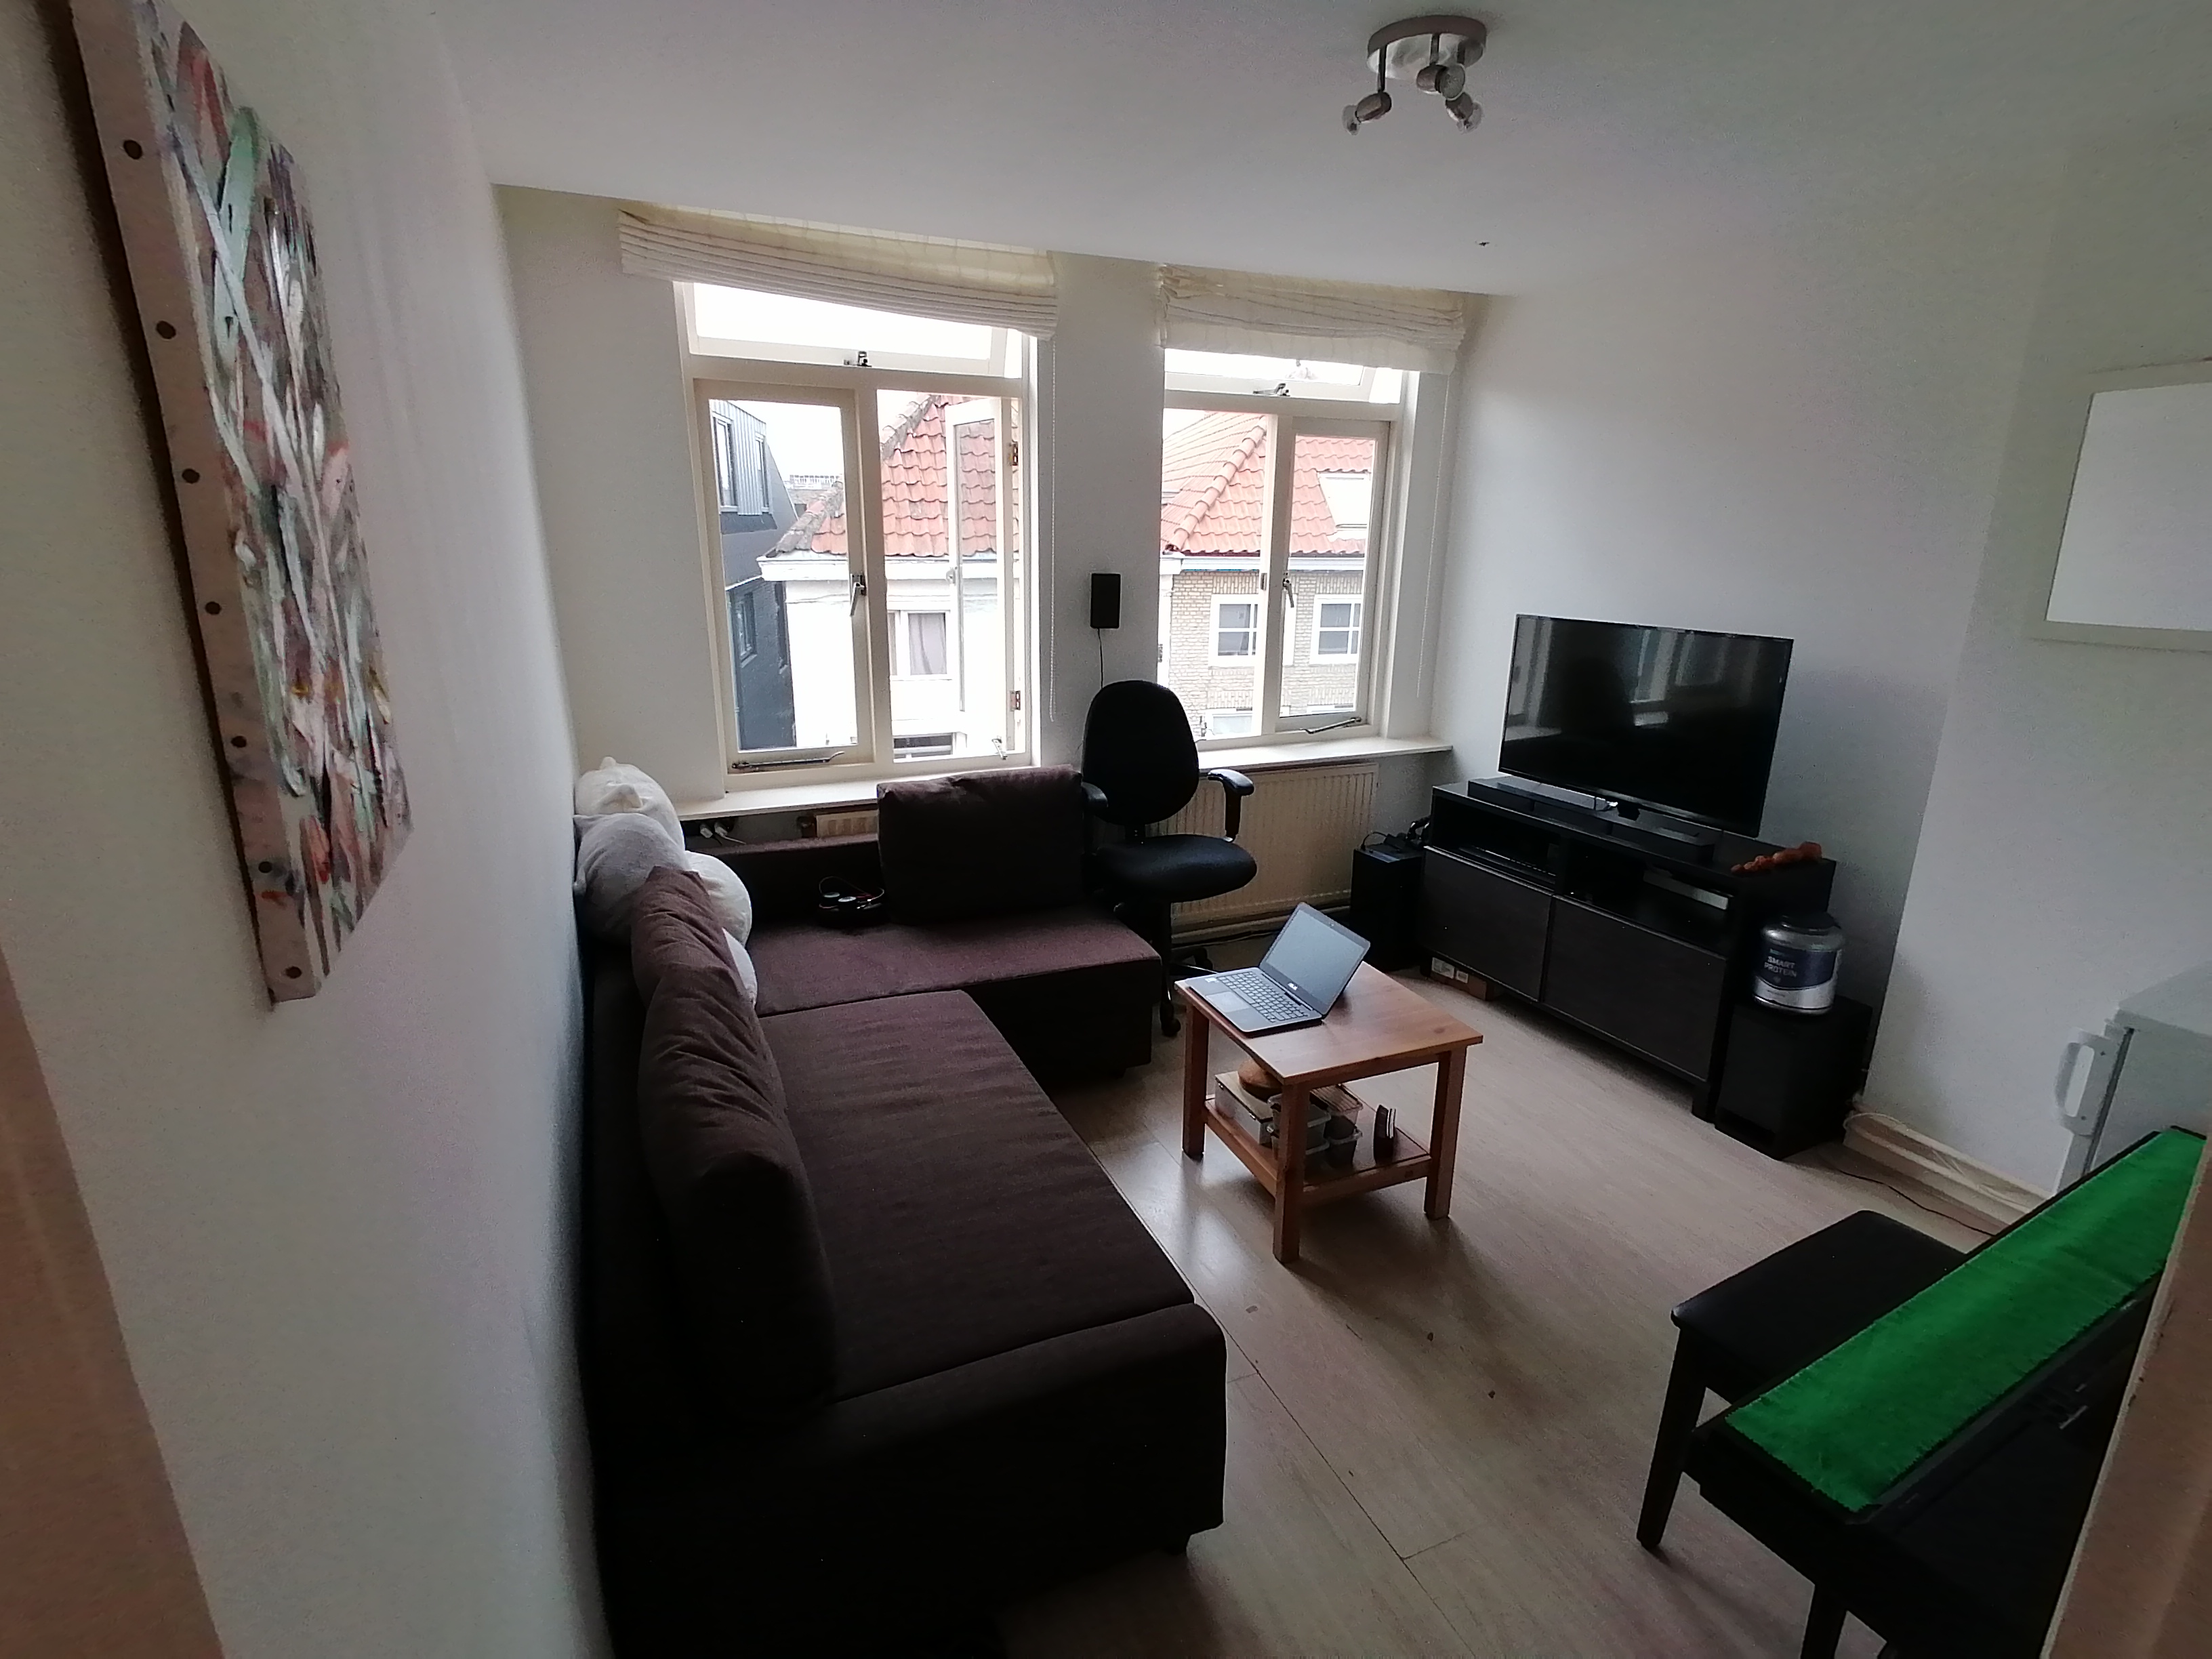 Bekijk for 1/1 van apartment in Breda